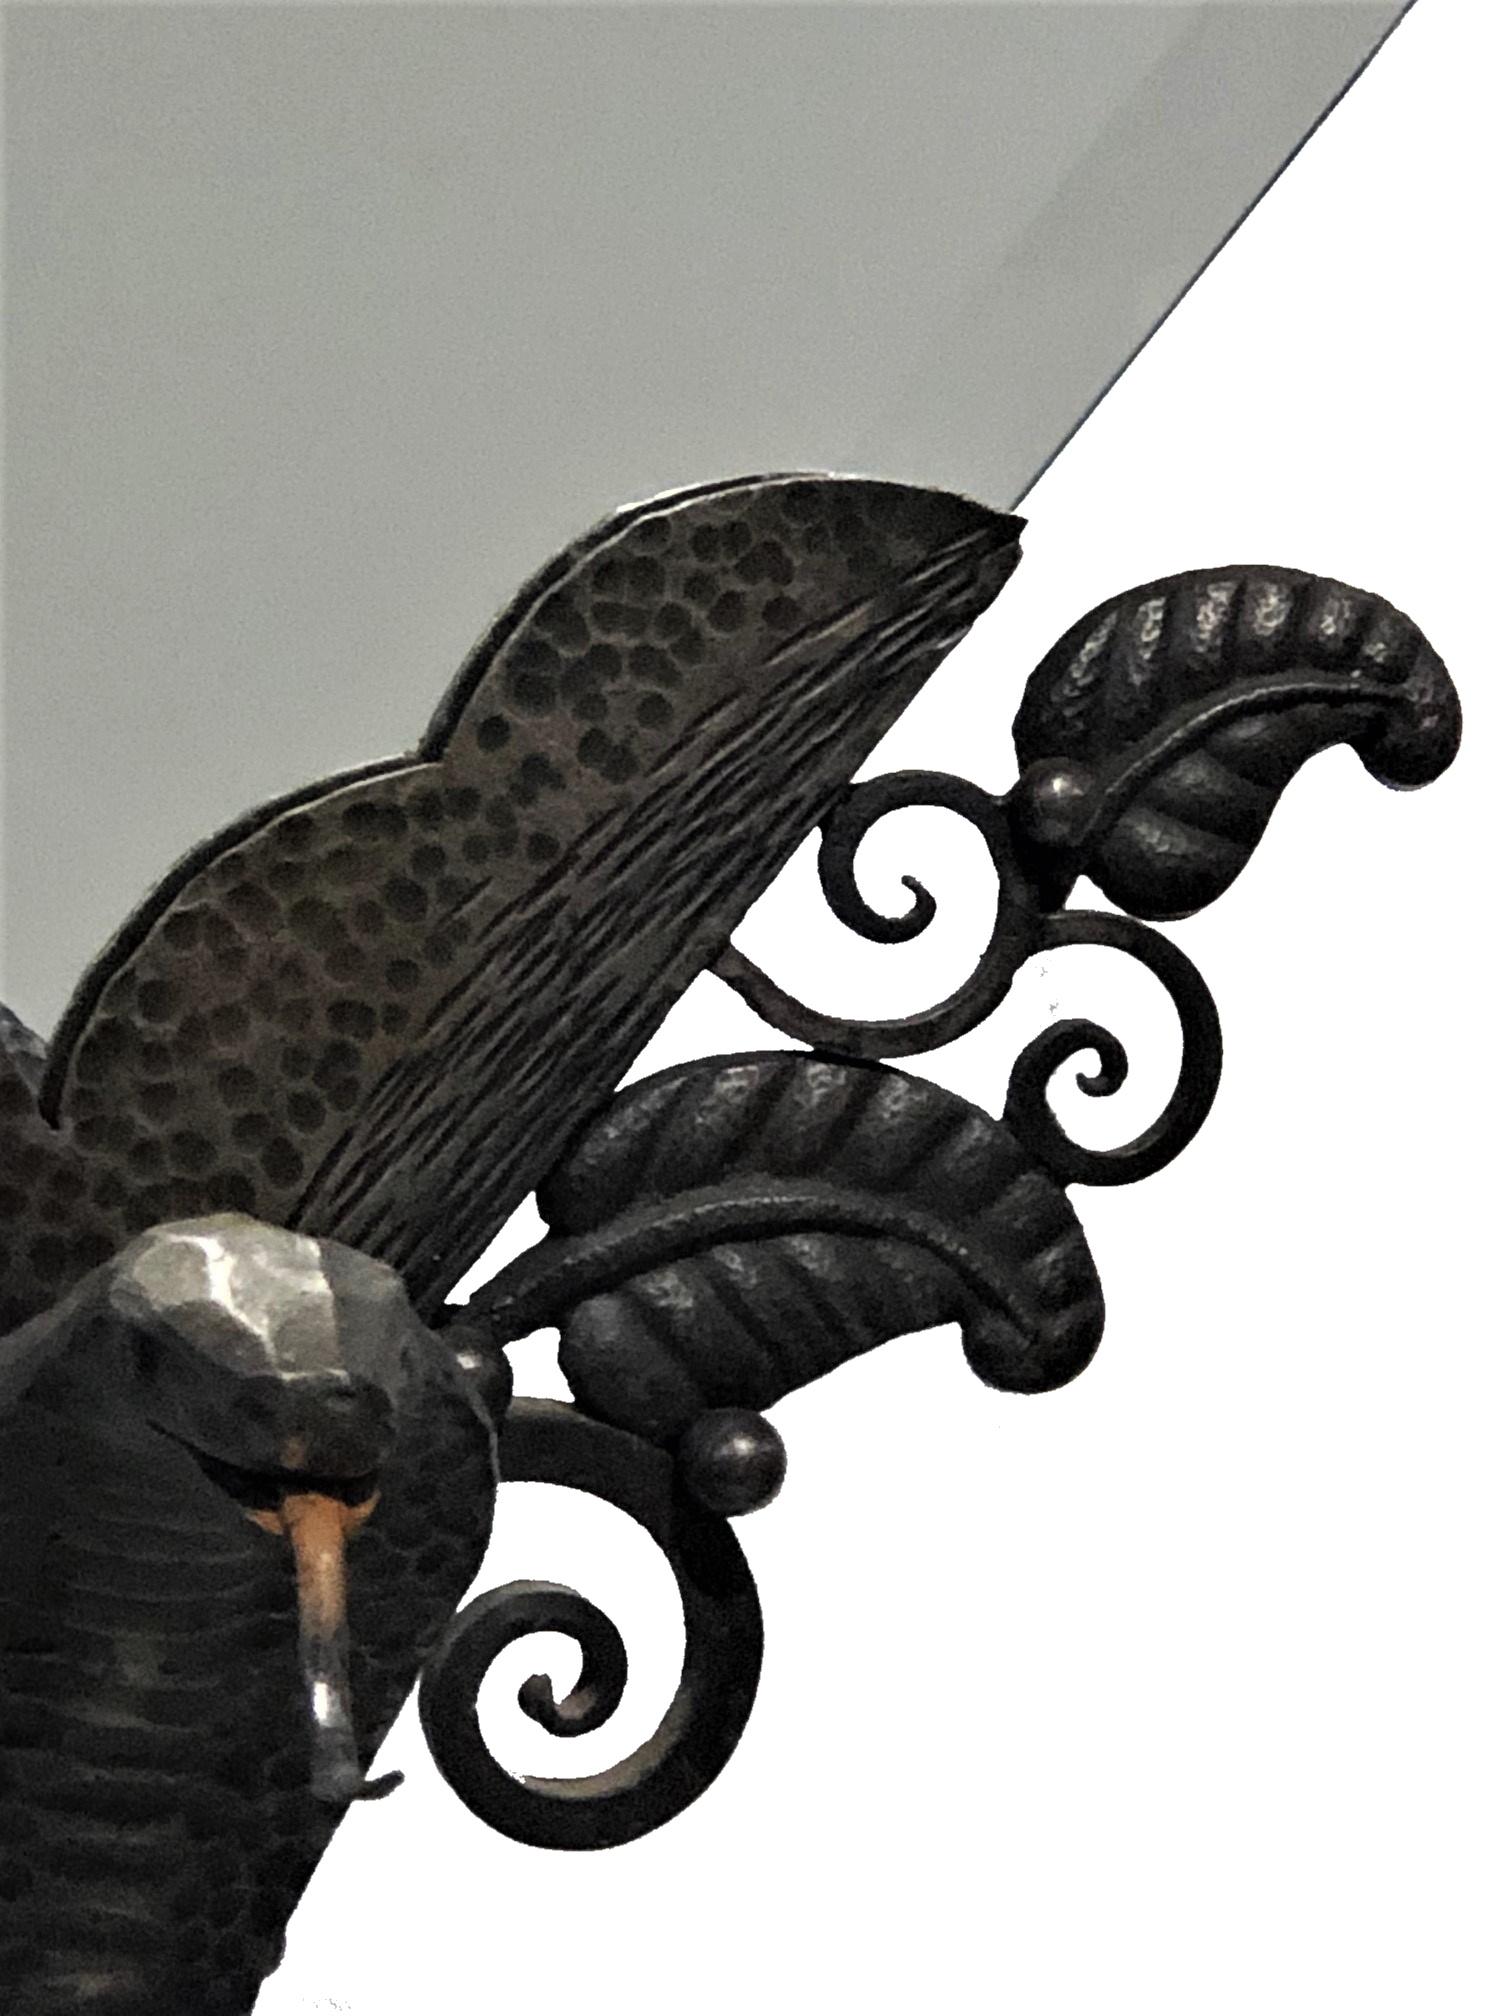 Art déco français
Miroir de table avec base serpent
Fer forgé
Circa 1920

À PROPOS DE
Cet élégant miroir de table Art déco américain en fer forgé, d'une conception exceptionnelle, présente le fer forgé le plus fin, un pied avec une composition